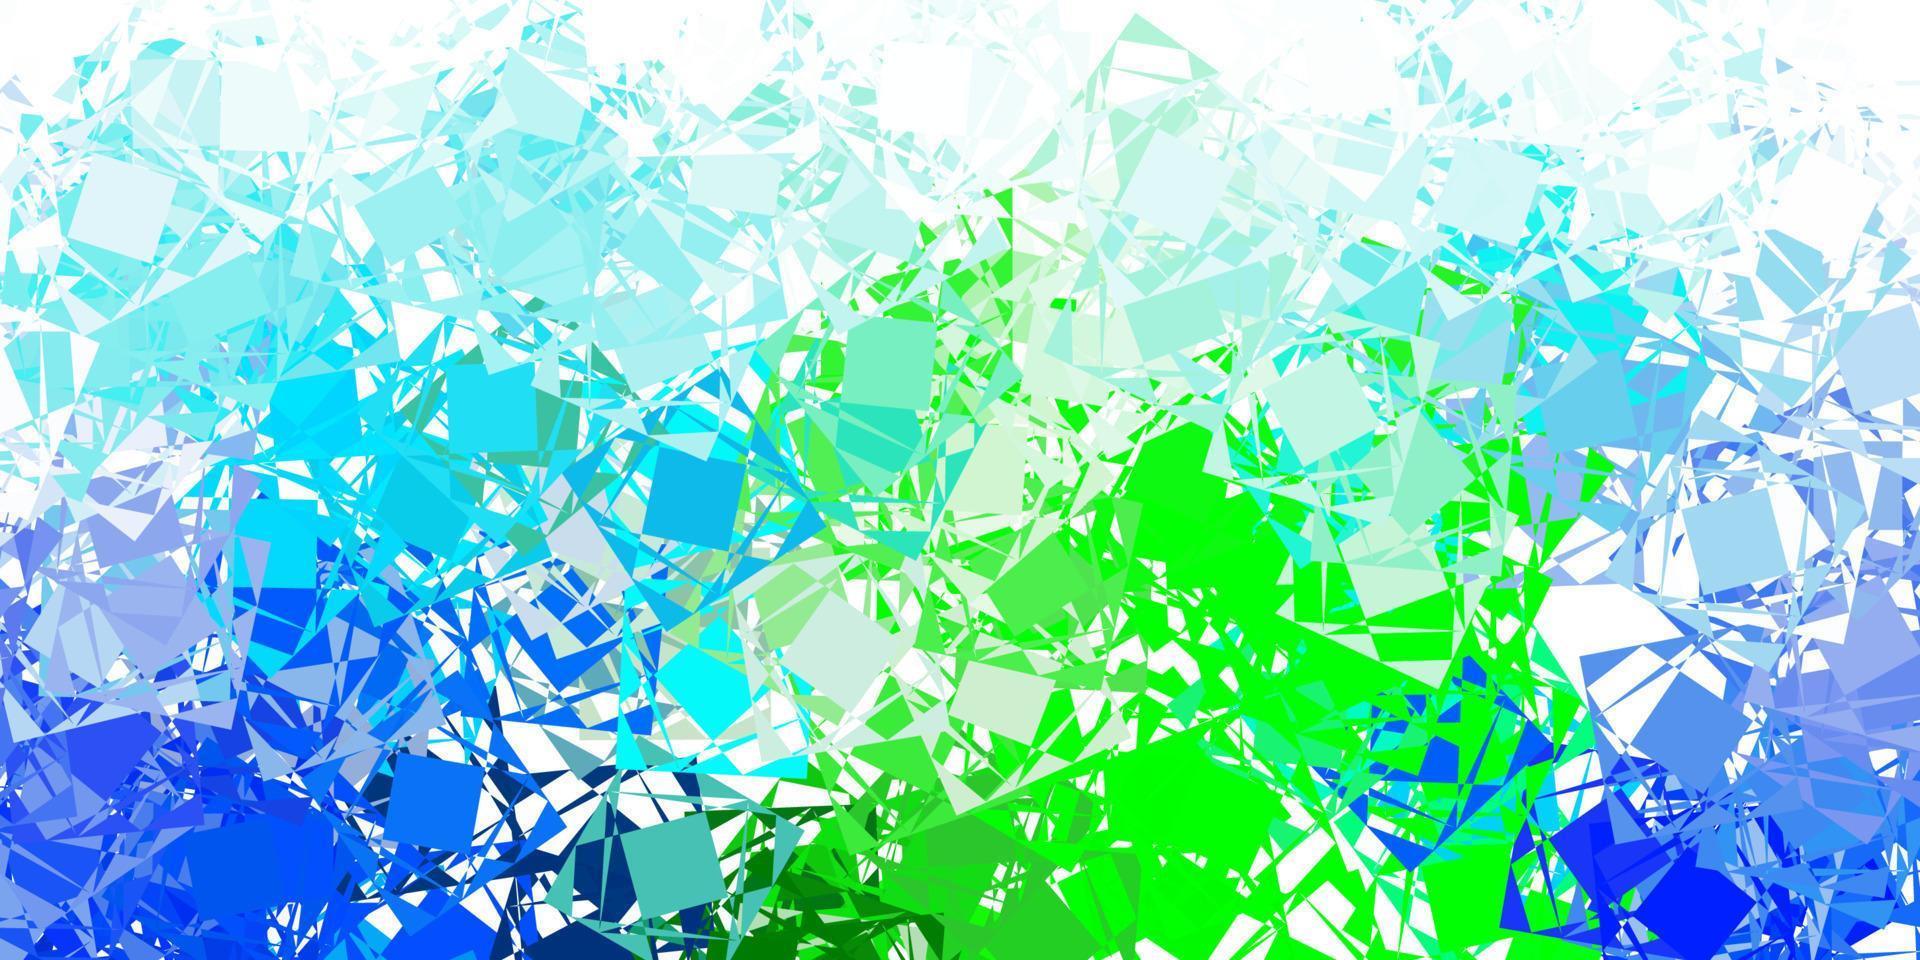 ljusblå, grön vektorbakgrund med trianglar. vektor